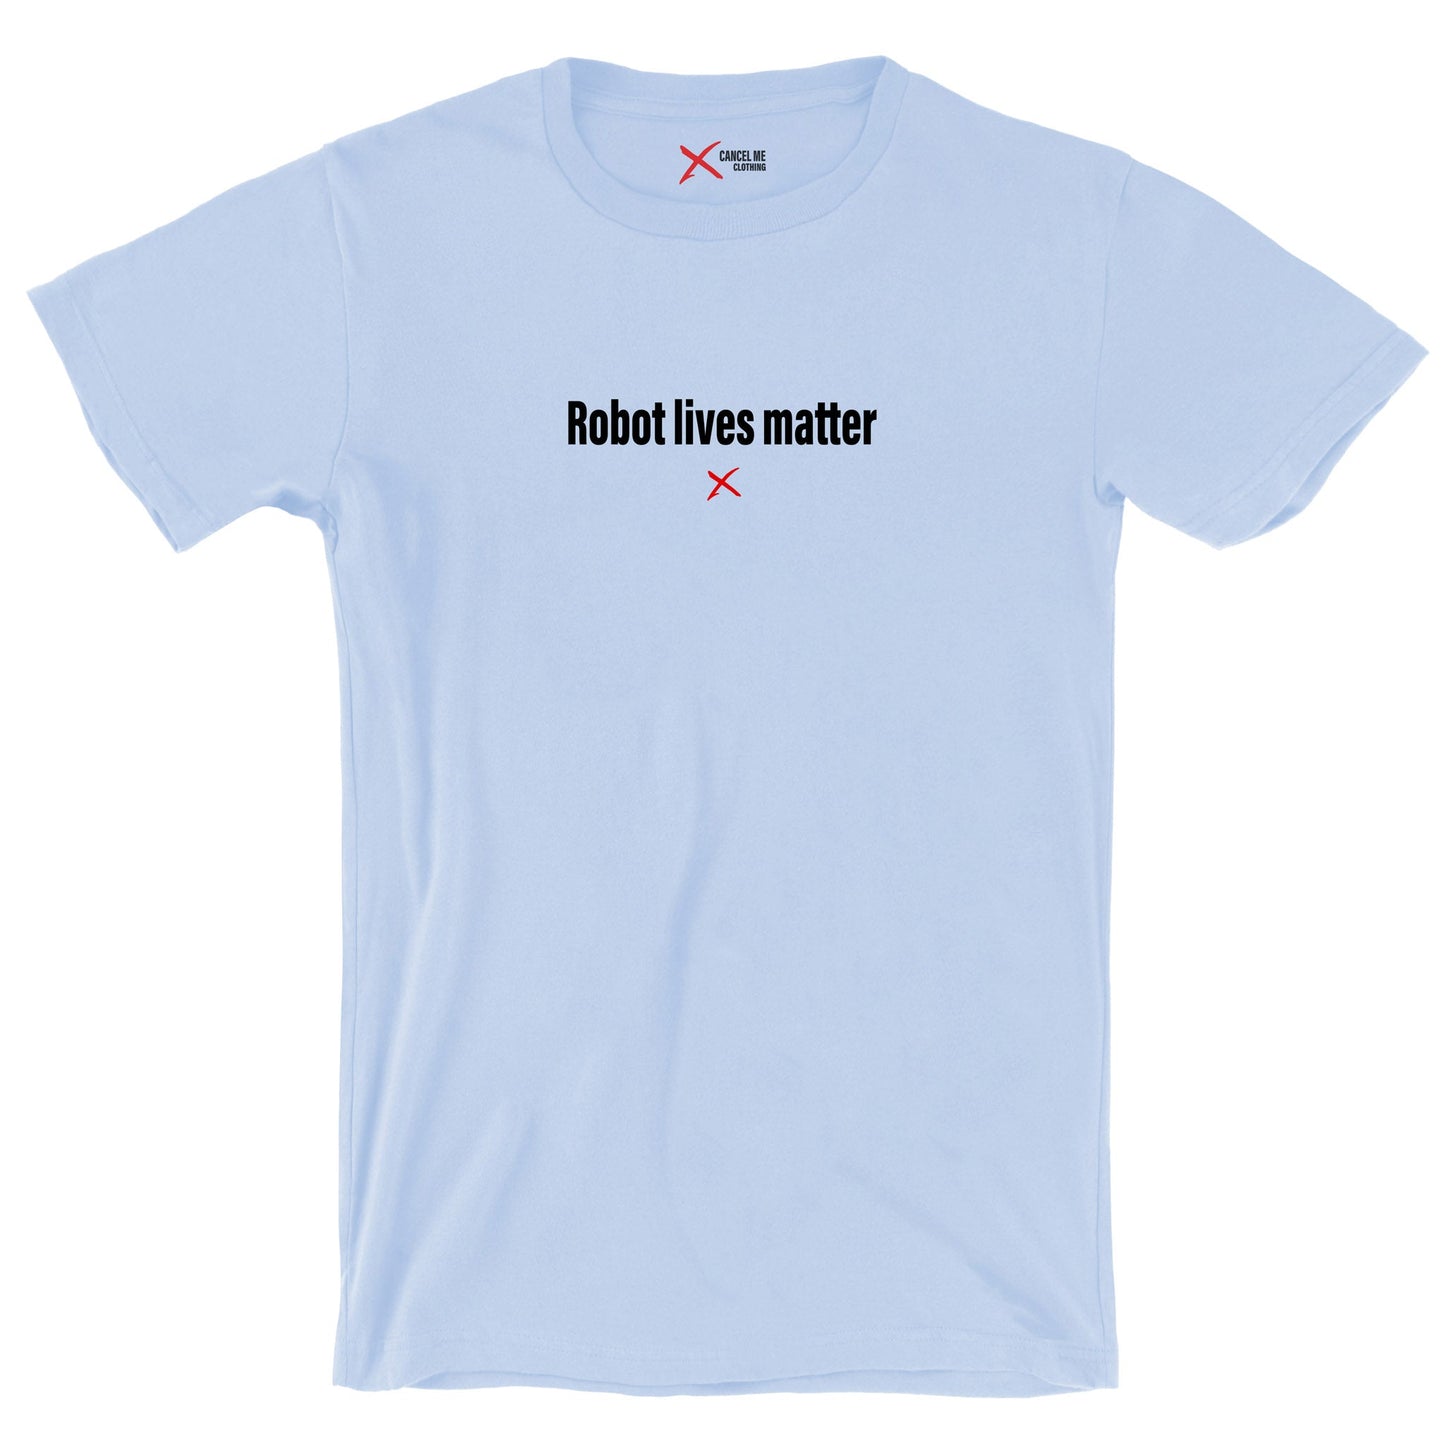 Robot lives matter - Shirt